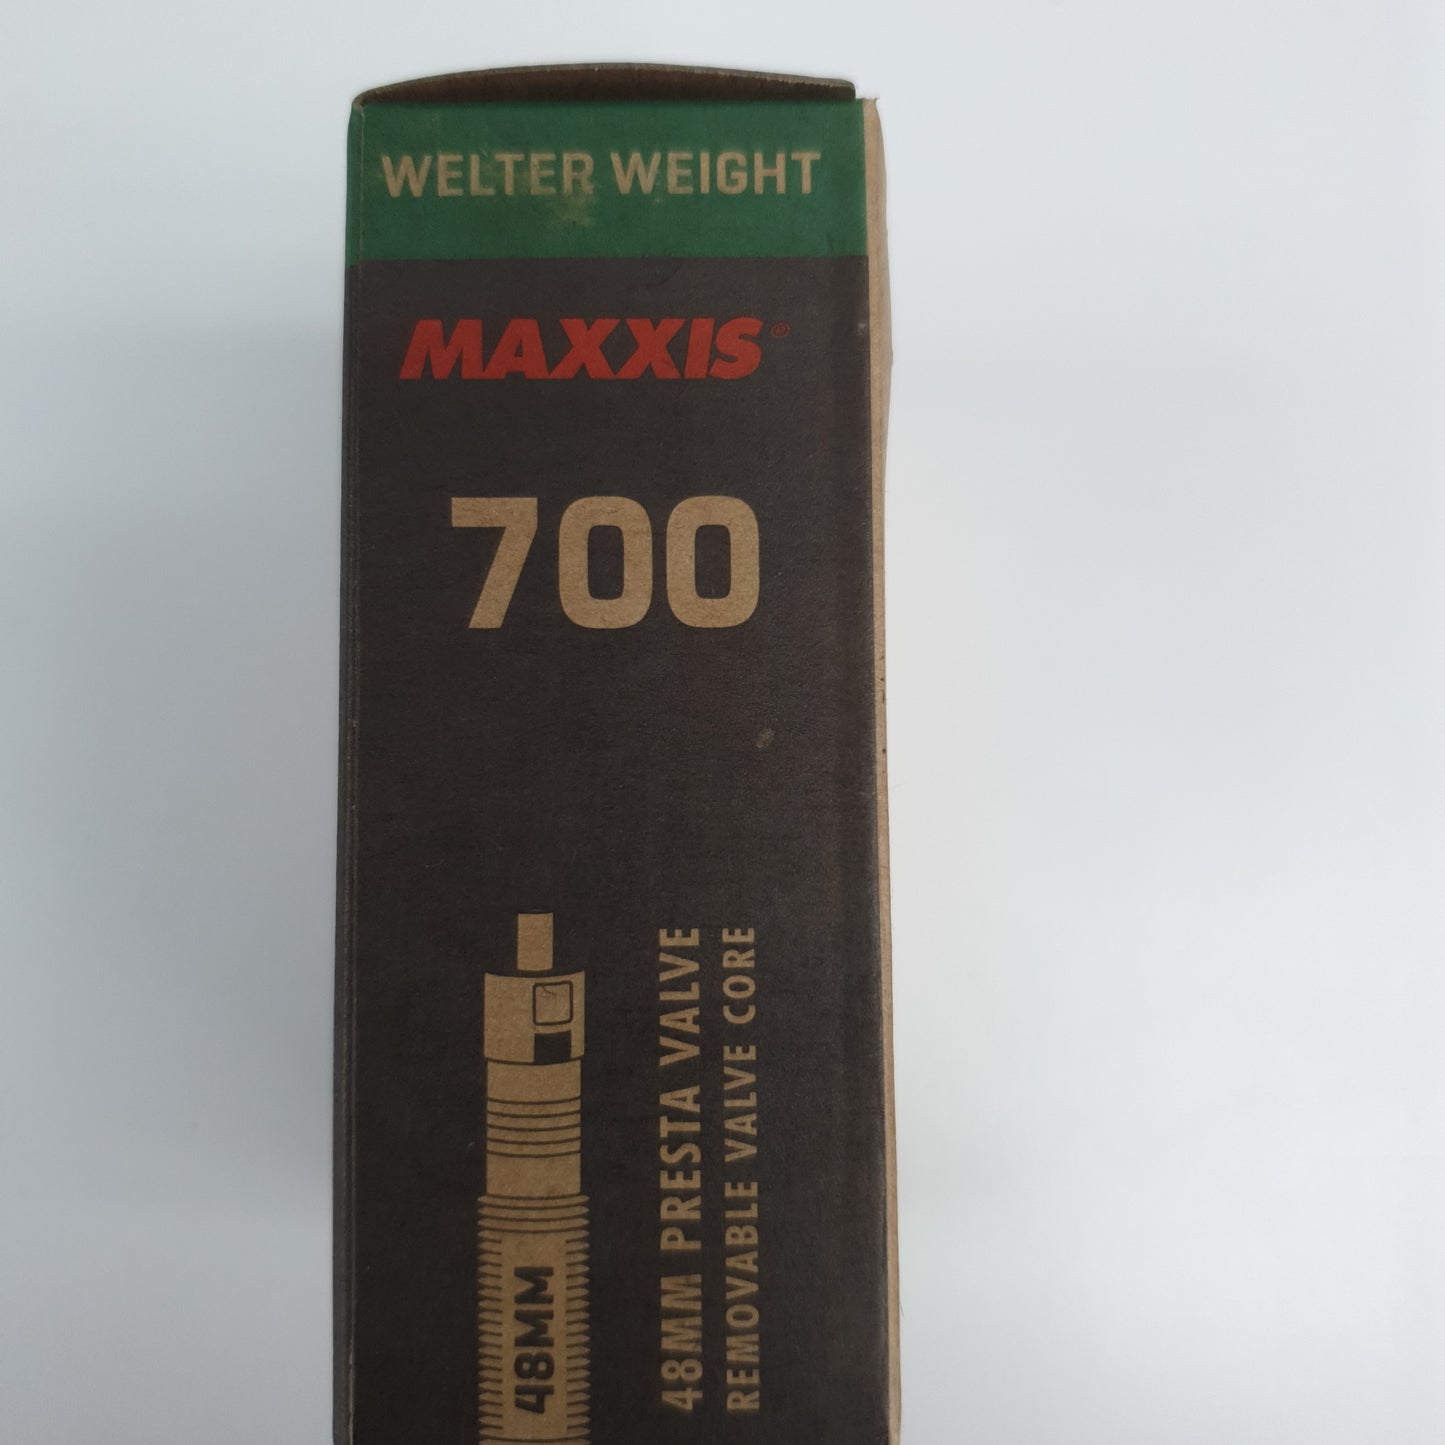 Maxxis Tube 700x23-32 48mm